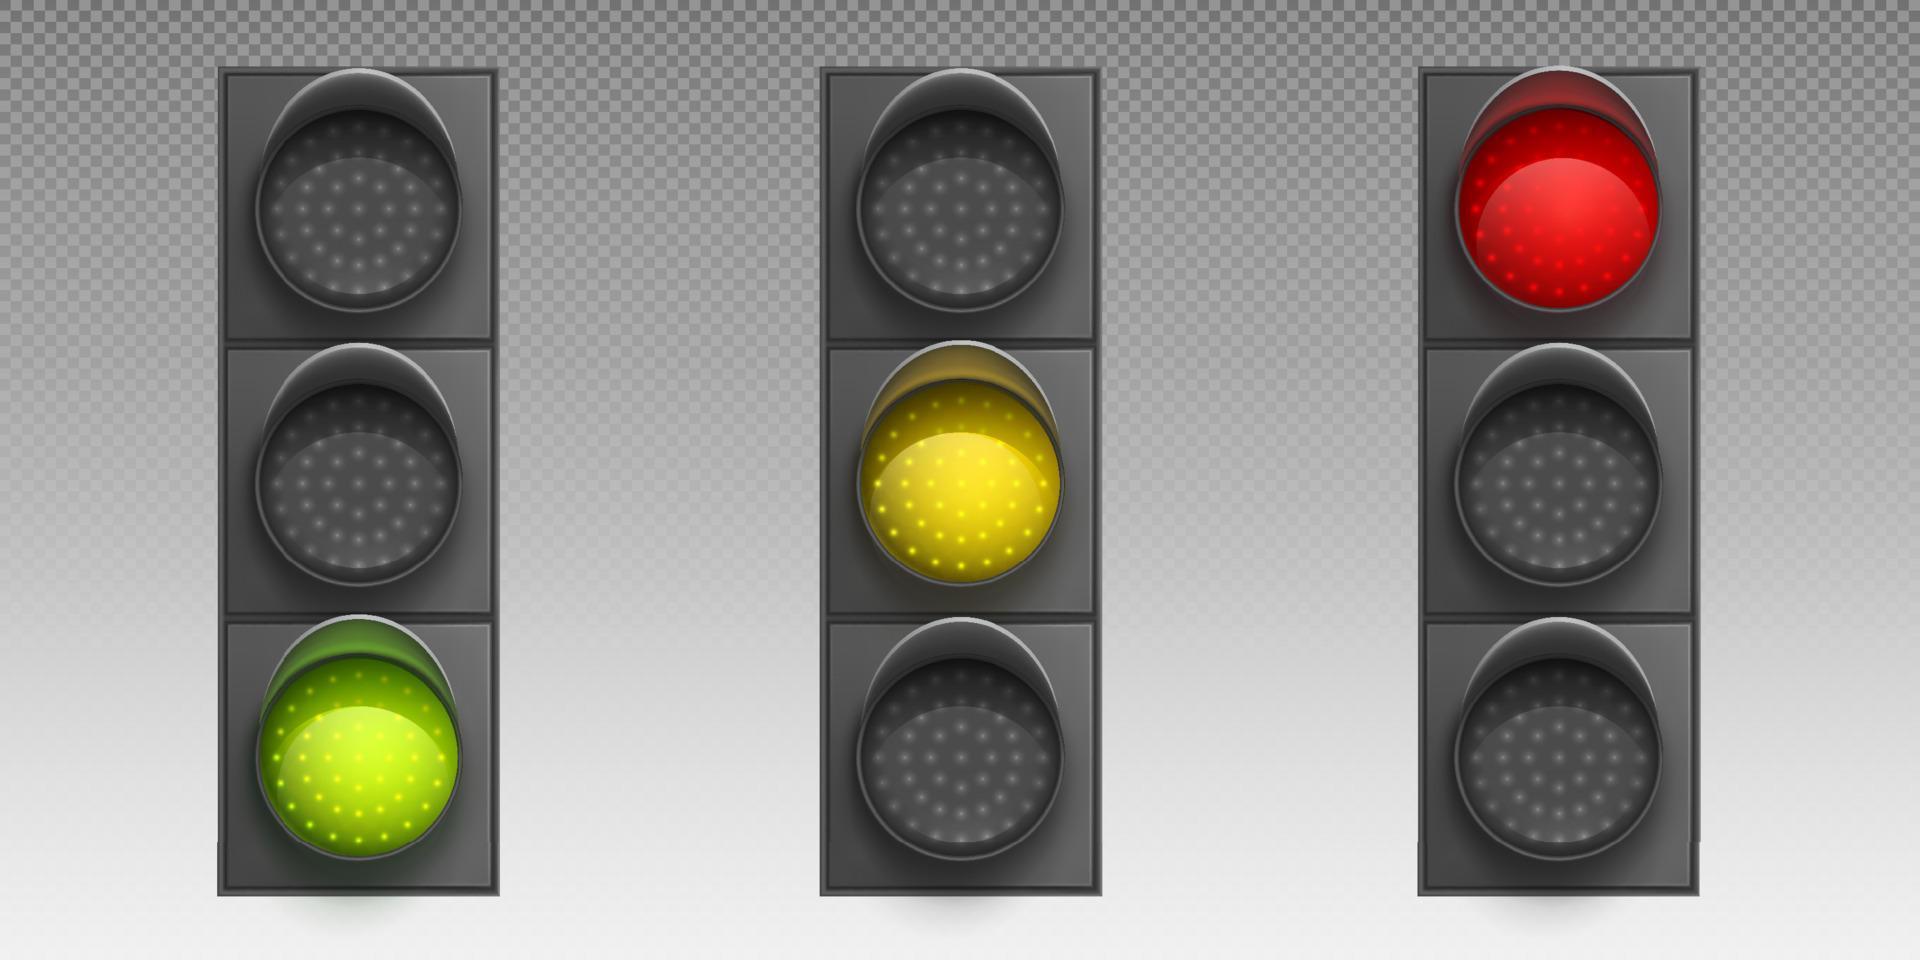 trafik ljus med led lampor, grön, gul eller röd vektor